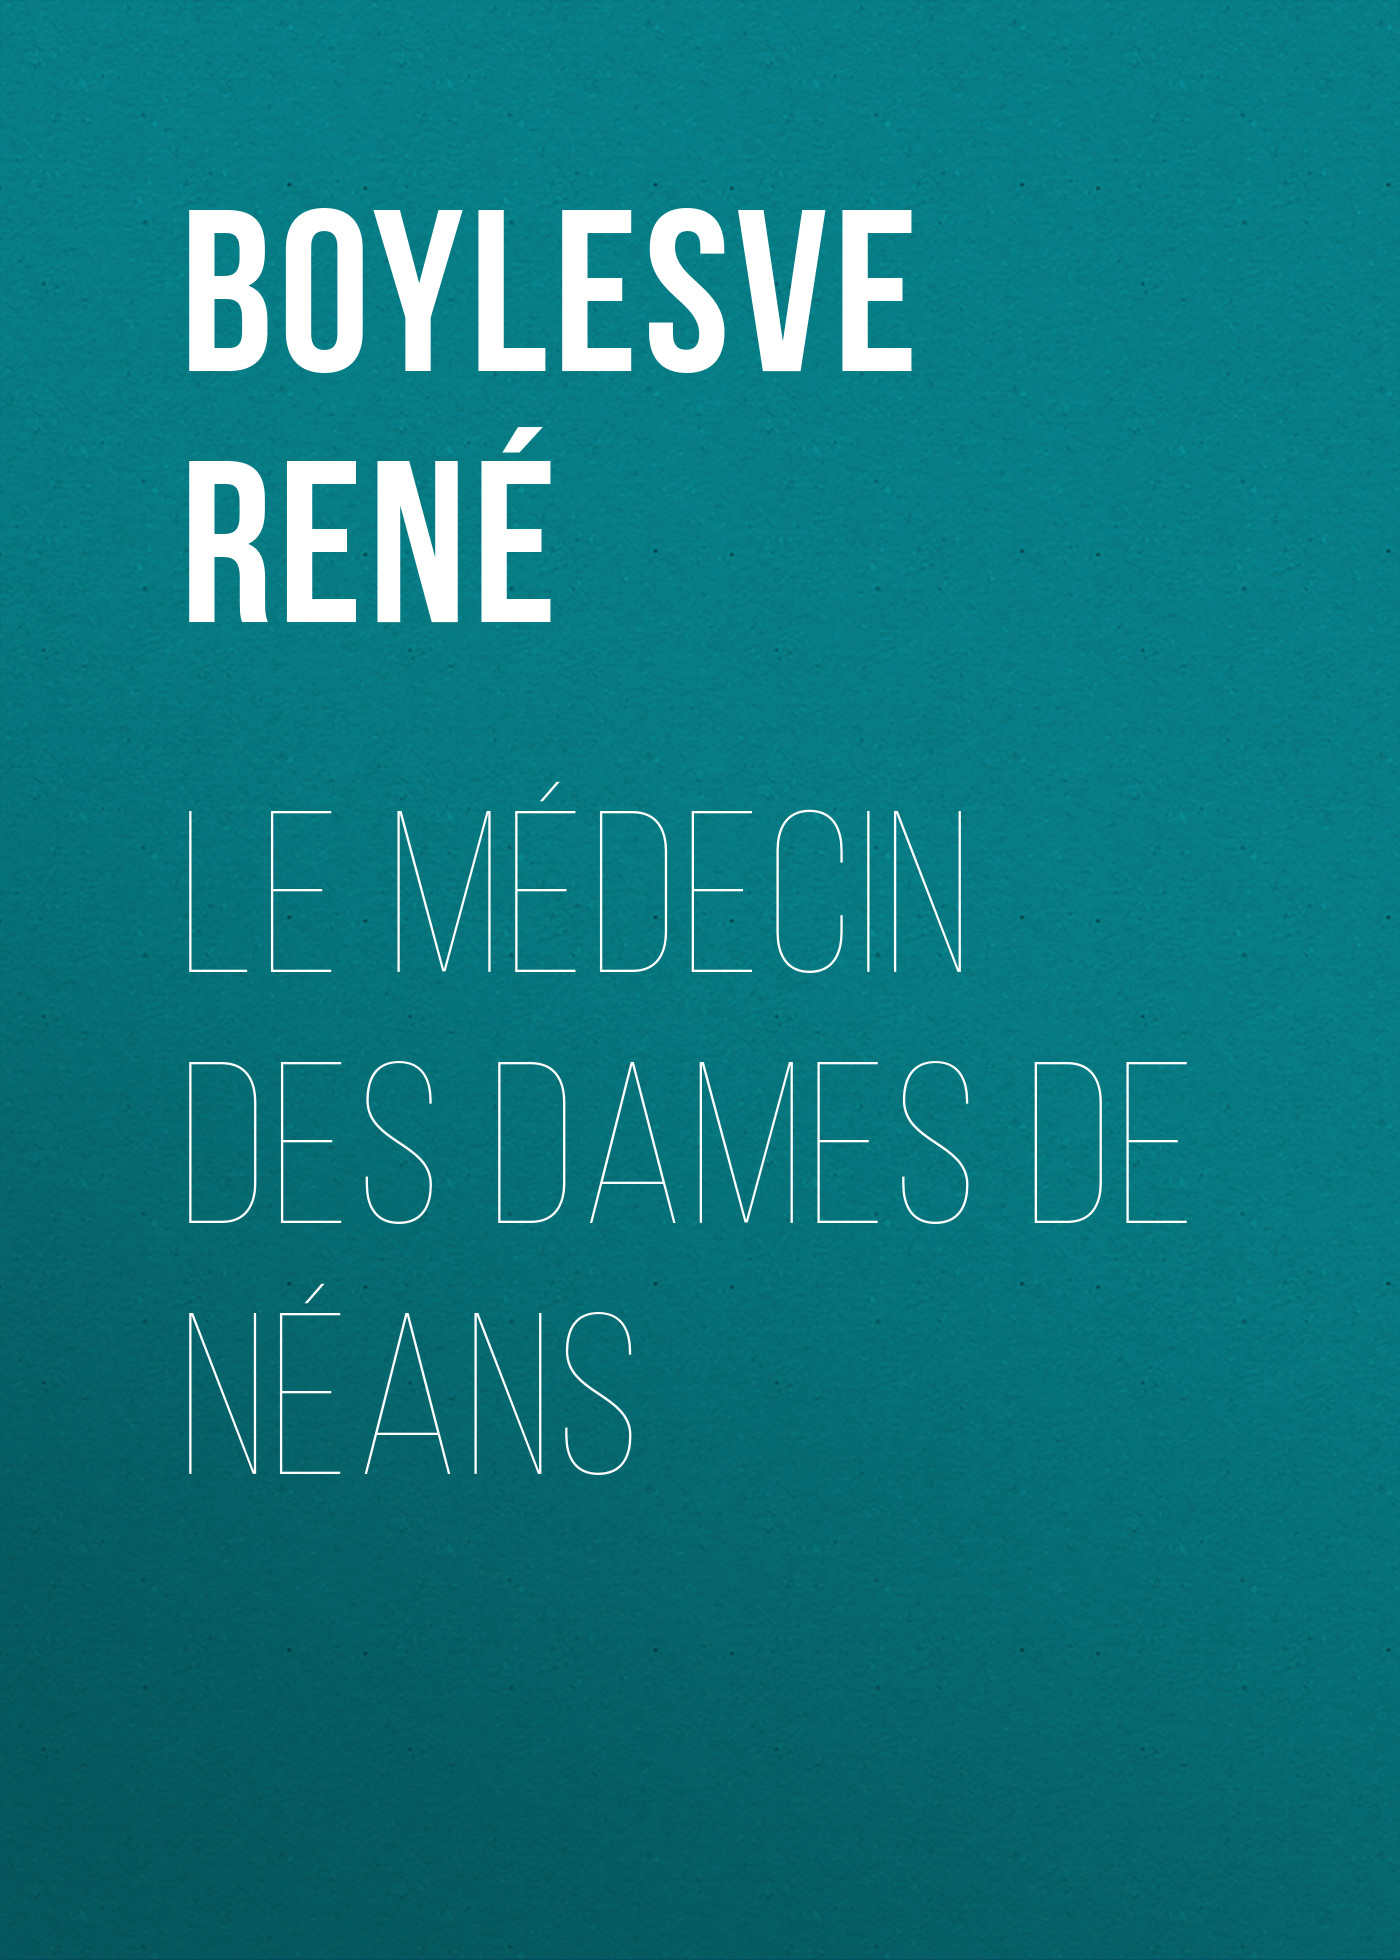 Книга Le Médecin des Dames de Néans из серии , созданная René Boylesve, может относится к жанру Зарубежная старинная литература, Зарубежная классика. Стоимость электронной книги Le Médecin des Dames de Néans с идентификатором 24179604 составляет 0.90 руб.